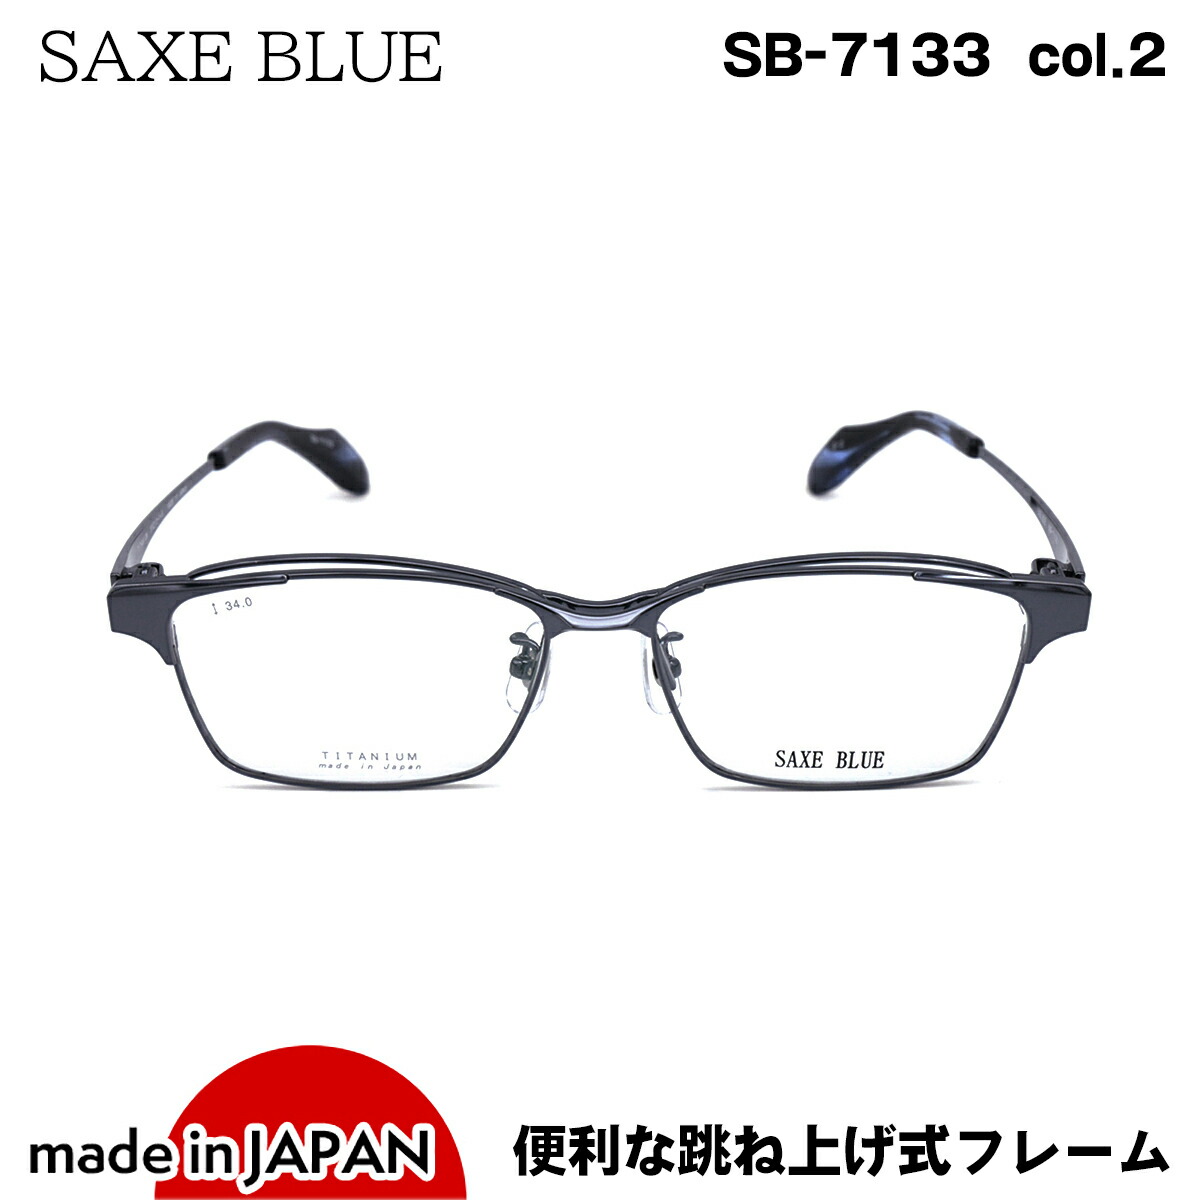 跳ね上げ式メガネ SB-7133 col.2 SAXE BLUE ザックスブルー チタン 国産 鯖江 日本製 送料込